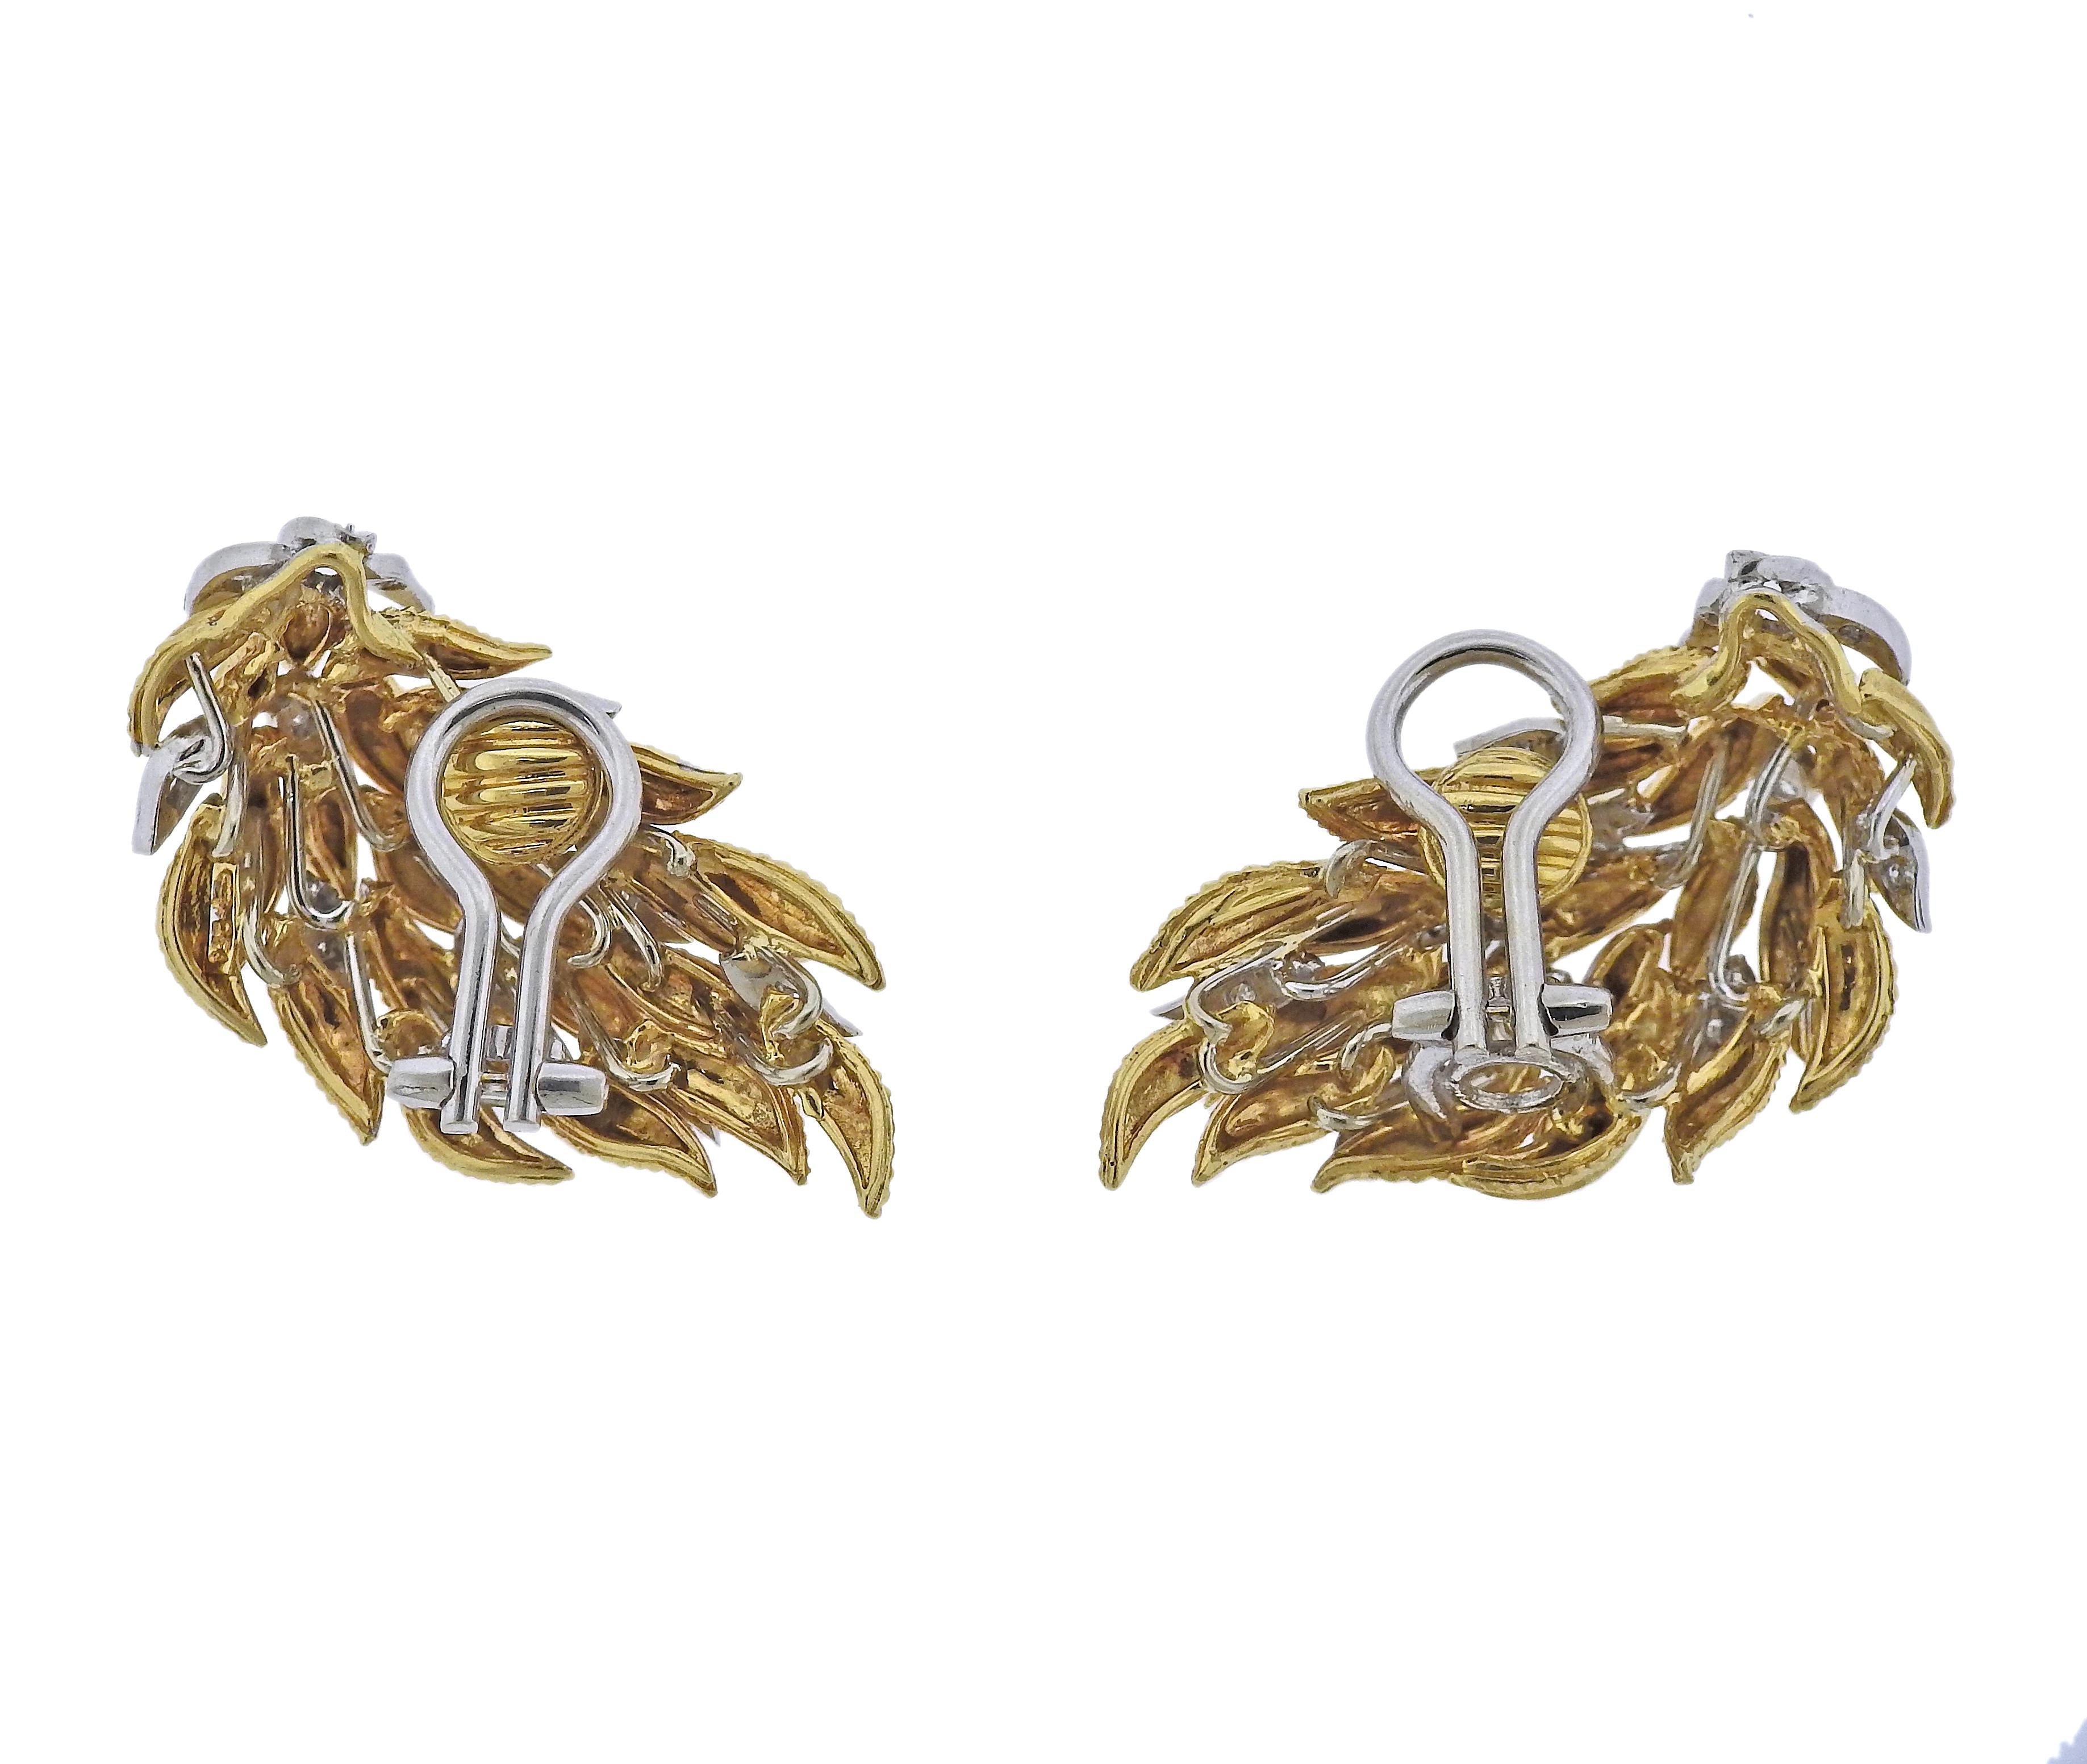 Paar Vintage-Ohrringe aus 18-karätigem Gold, ca. 1940, mit ca. 0,22 ct Diamanten. Die Ohrringe messen 35 mm x 21 mm. Gewicht - 23,5 Gramm.